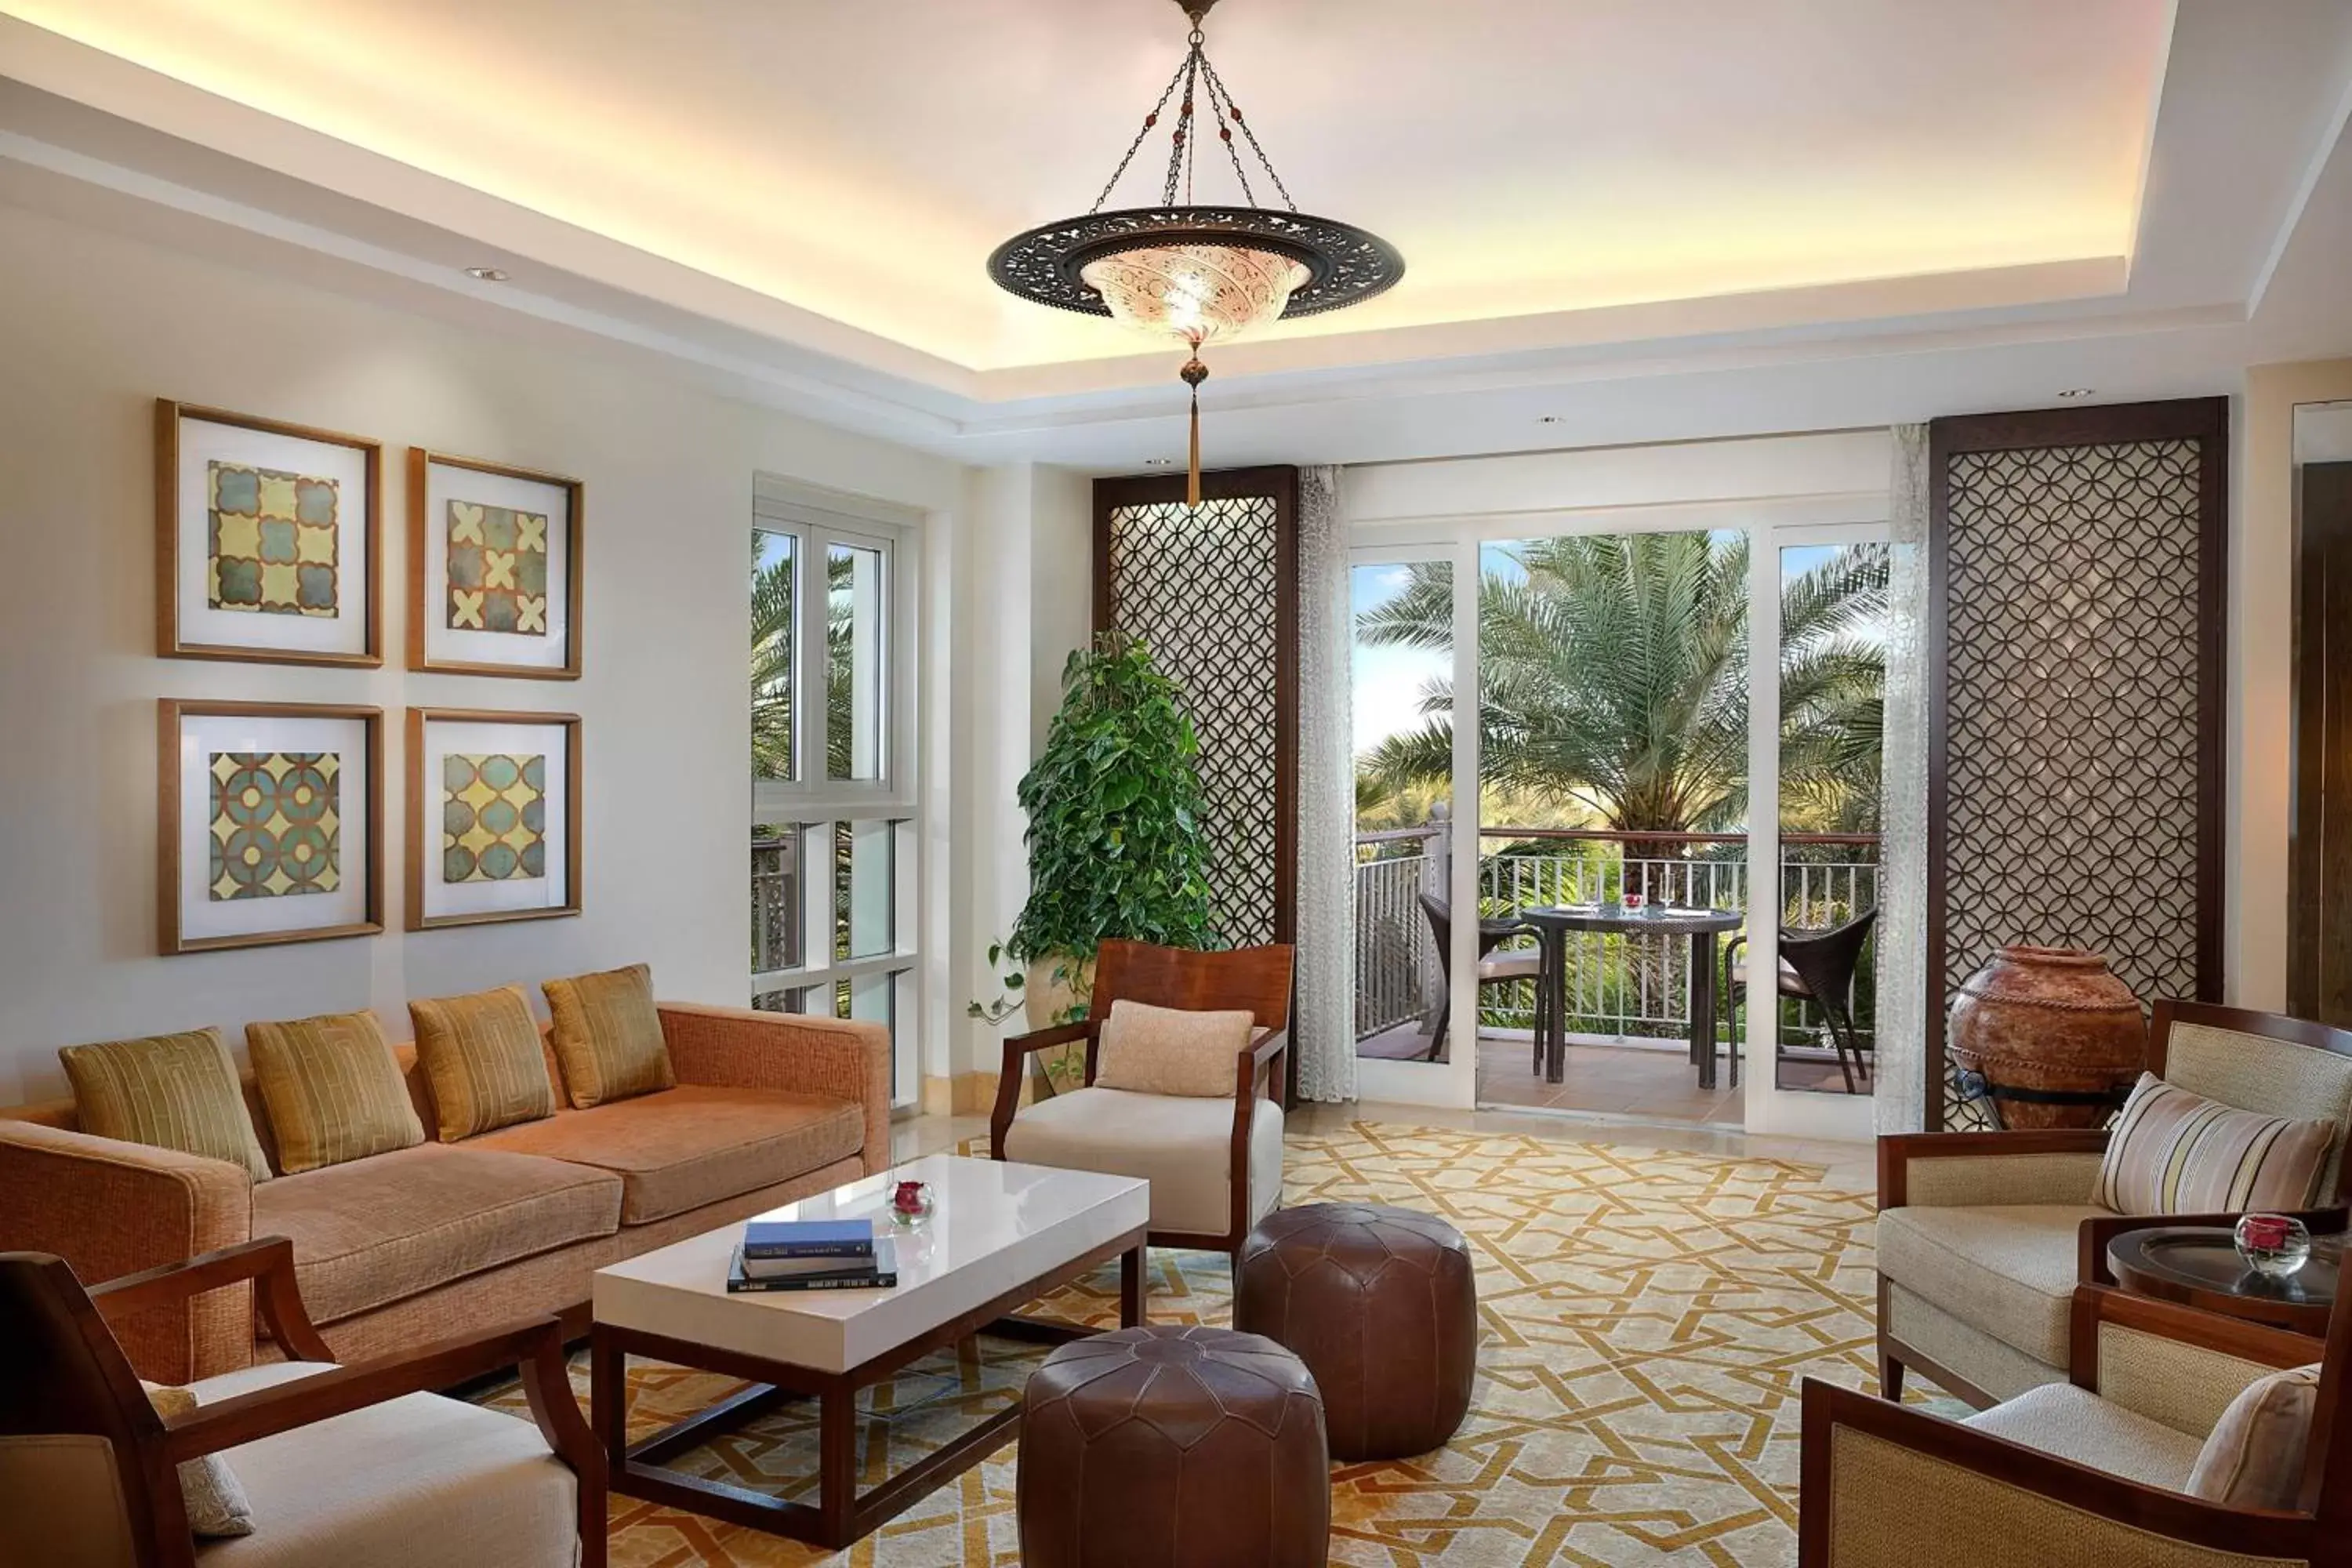 Lounge or bar, Seating Area in The Ritz-Carlton, Dubai